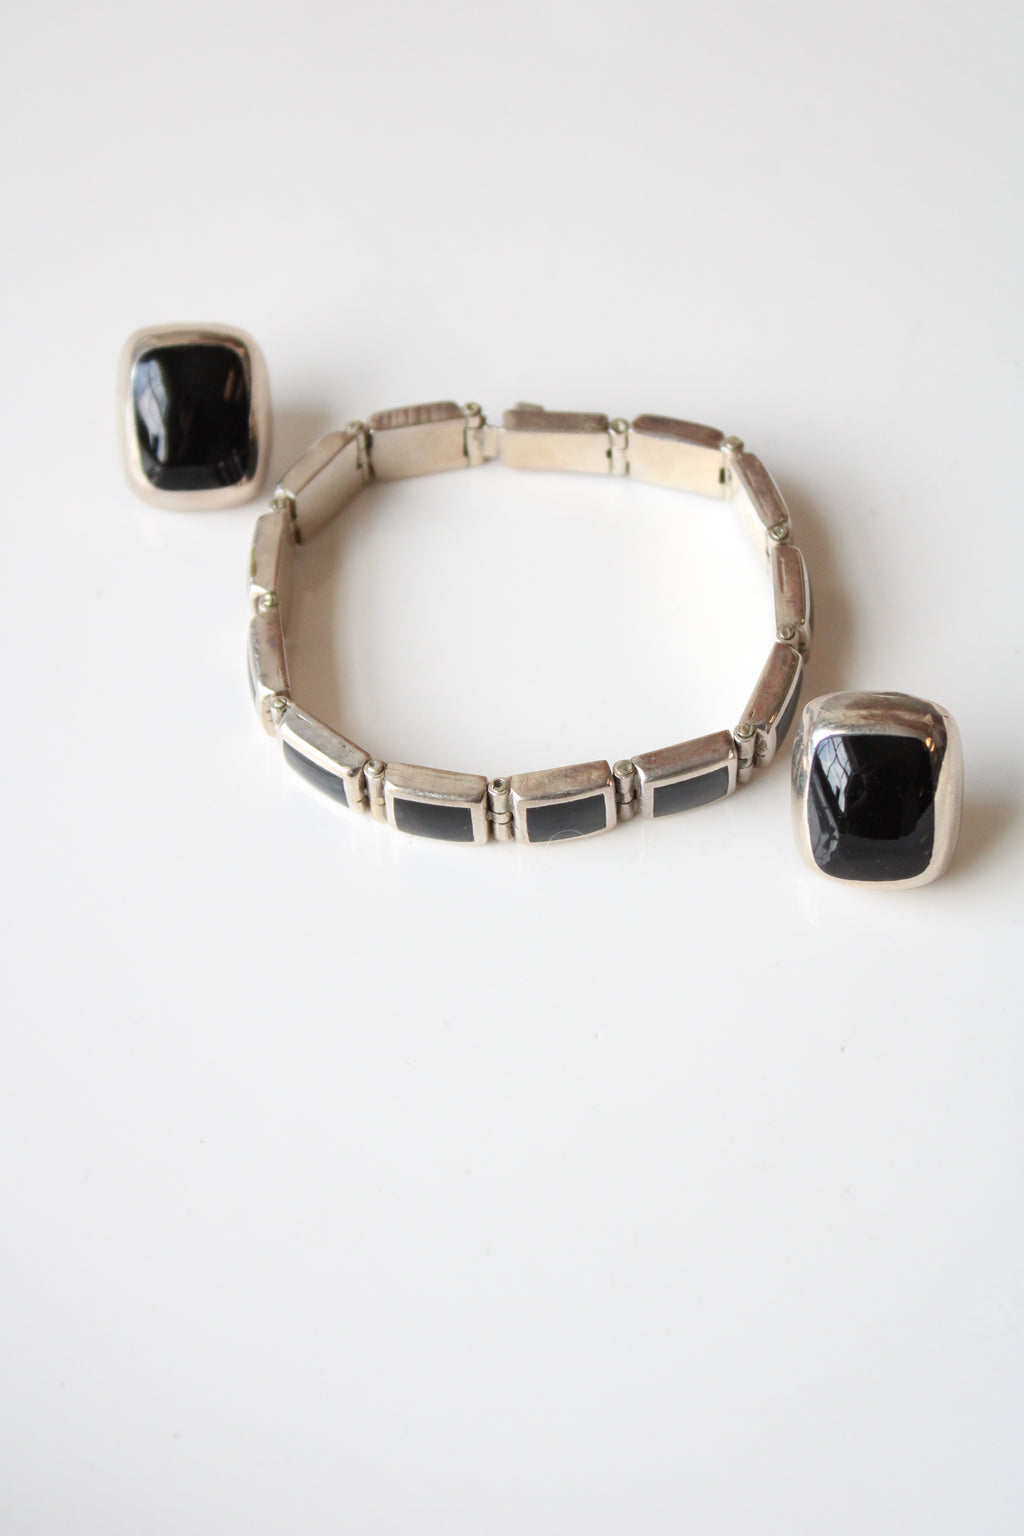 Black Onyx Sterling Silver Bracelet & Earring Set